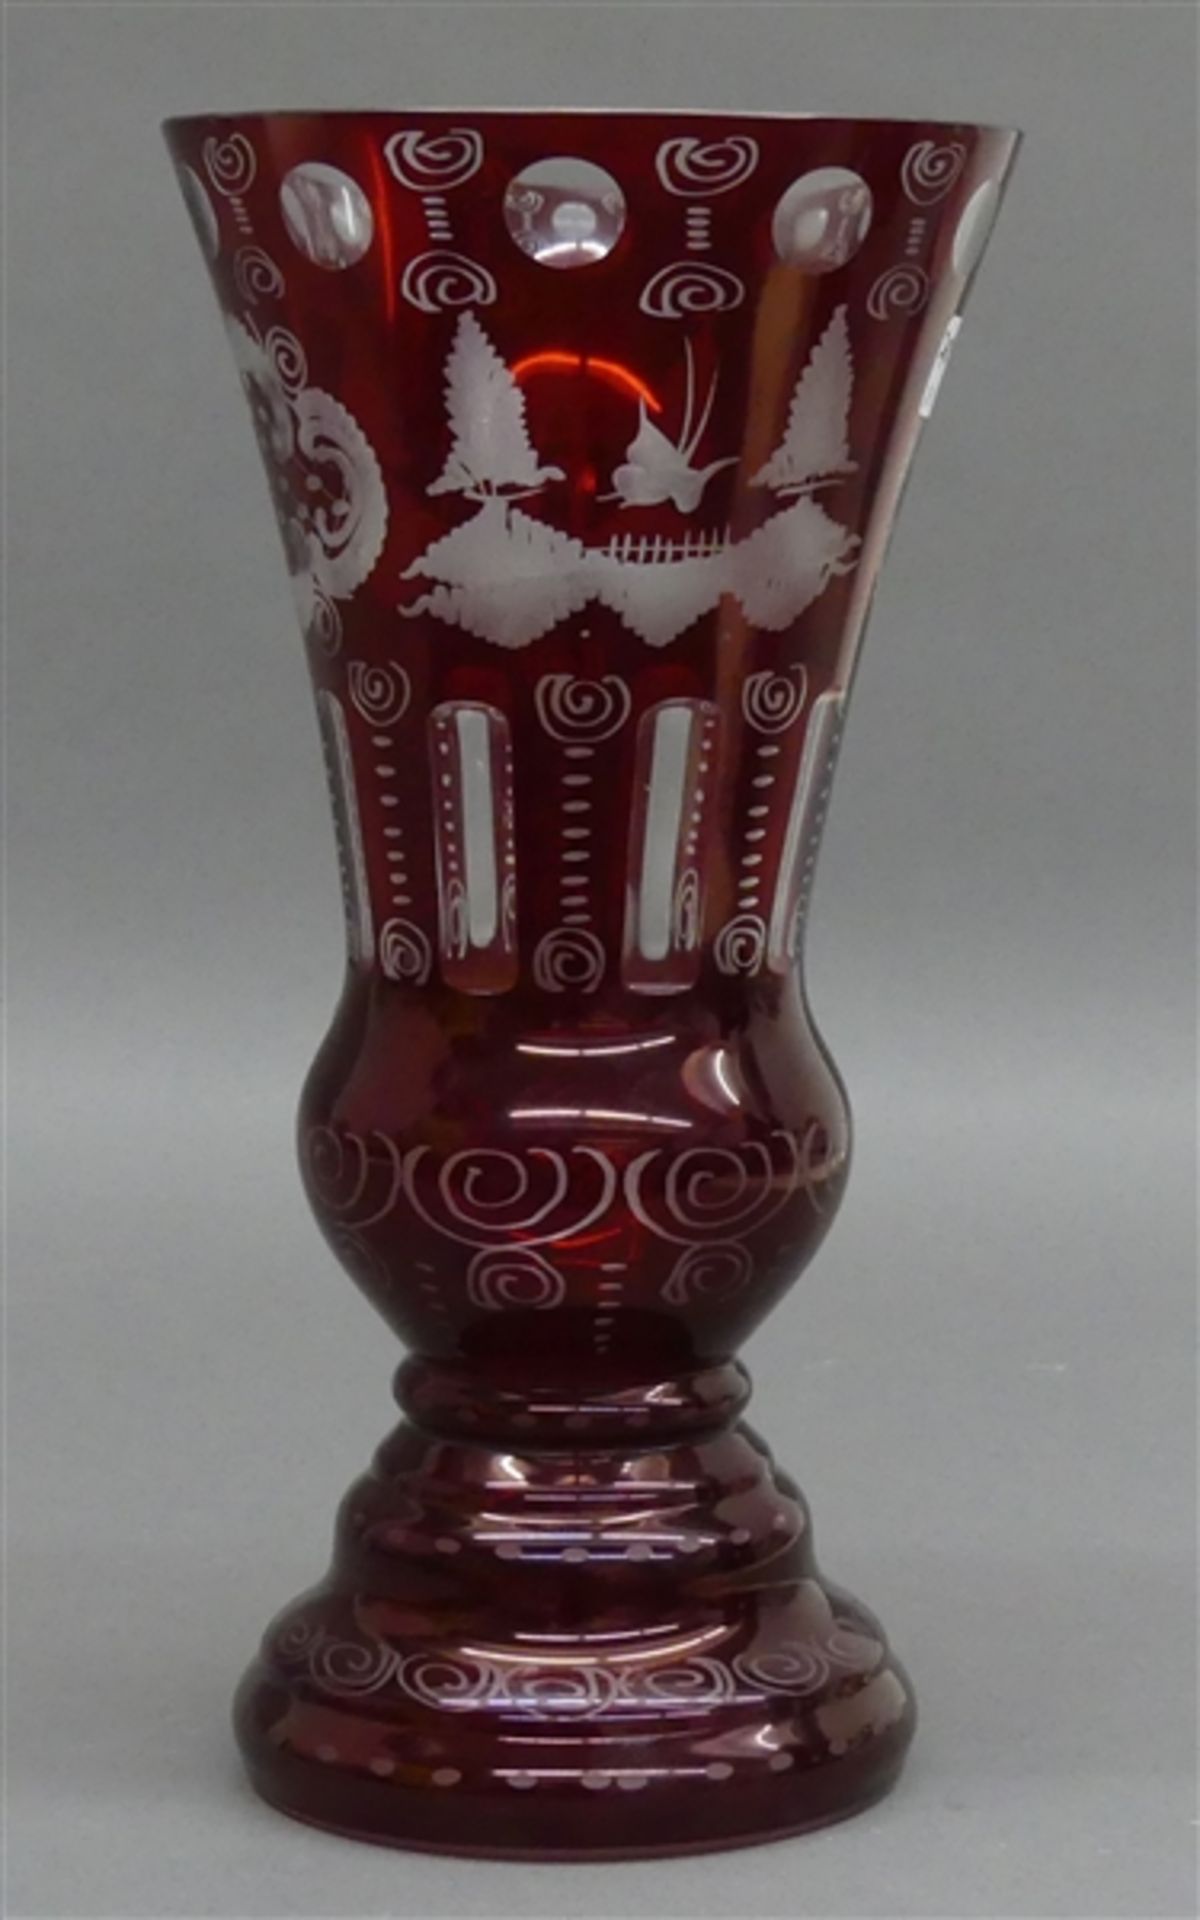 Pokalglas rubinroter Überfang, Landschafts- und Ornamentdekor, h 30 cm,